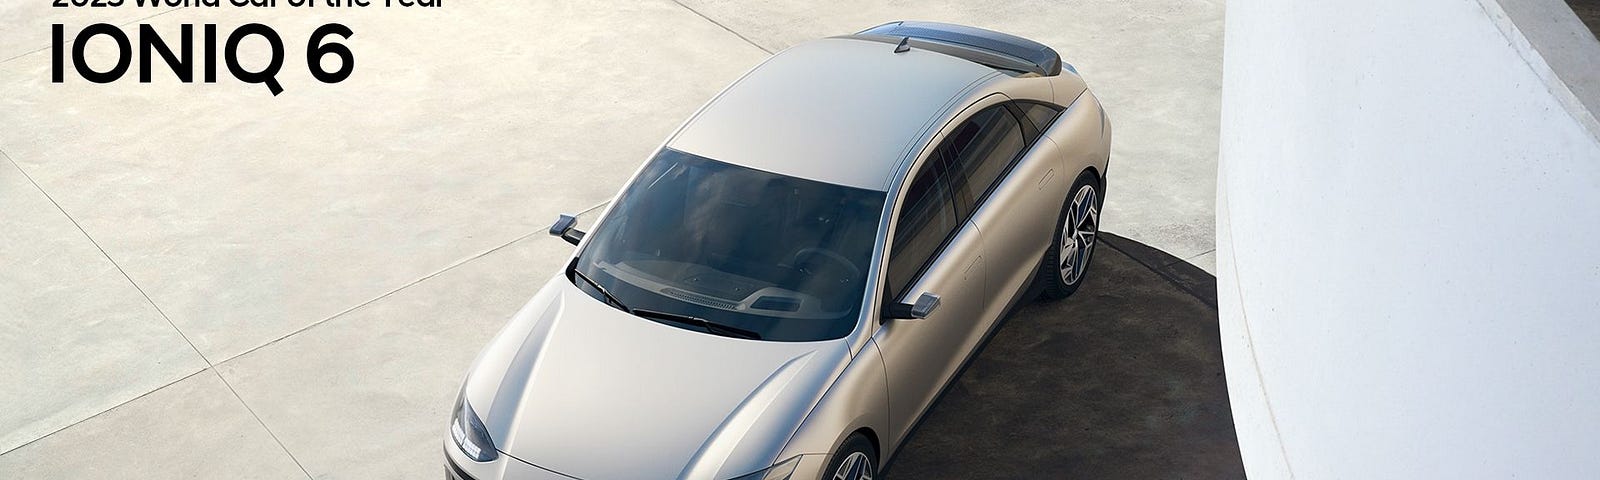 IMAGE: A picture of the Hyundai Ioniq 6 2023